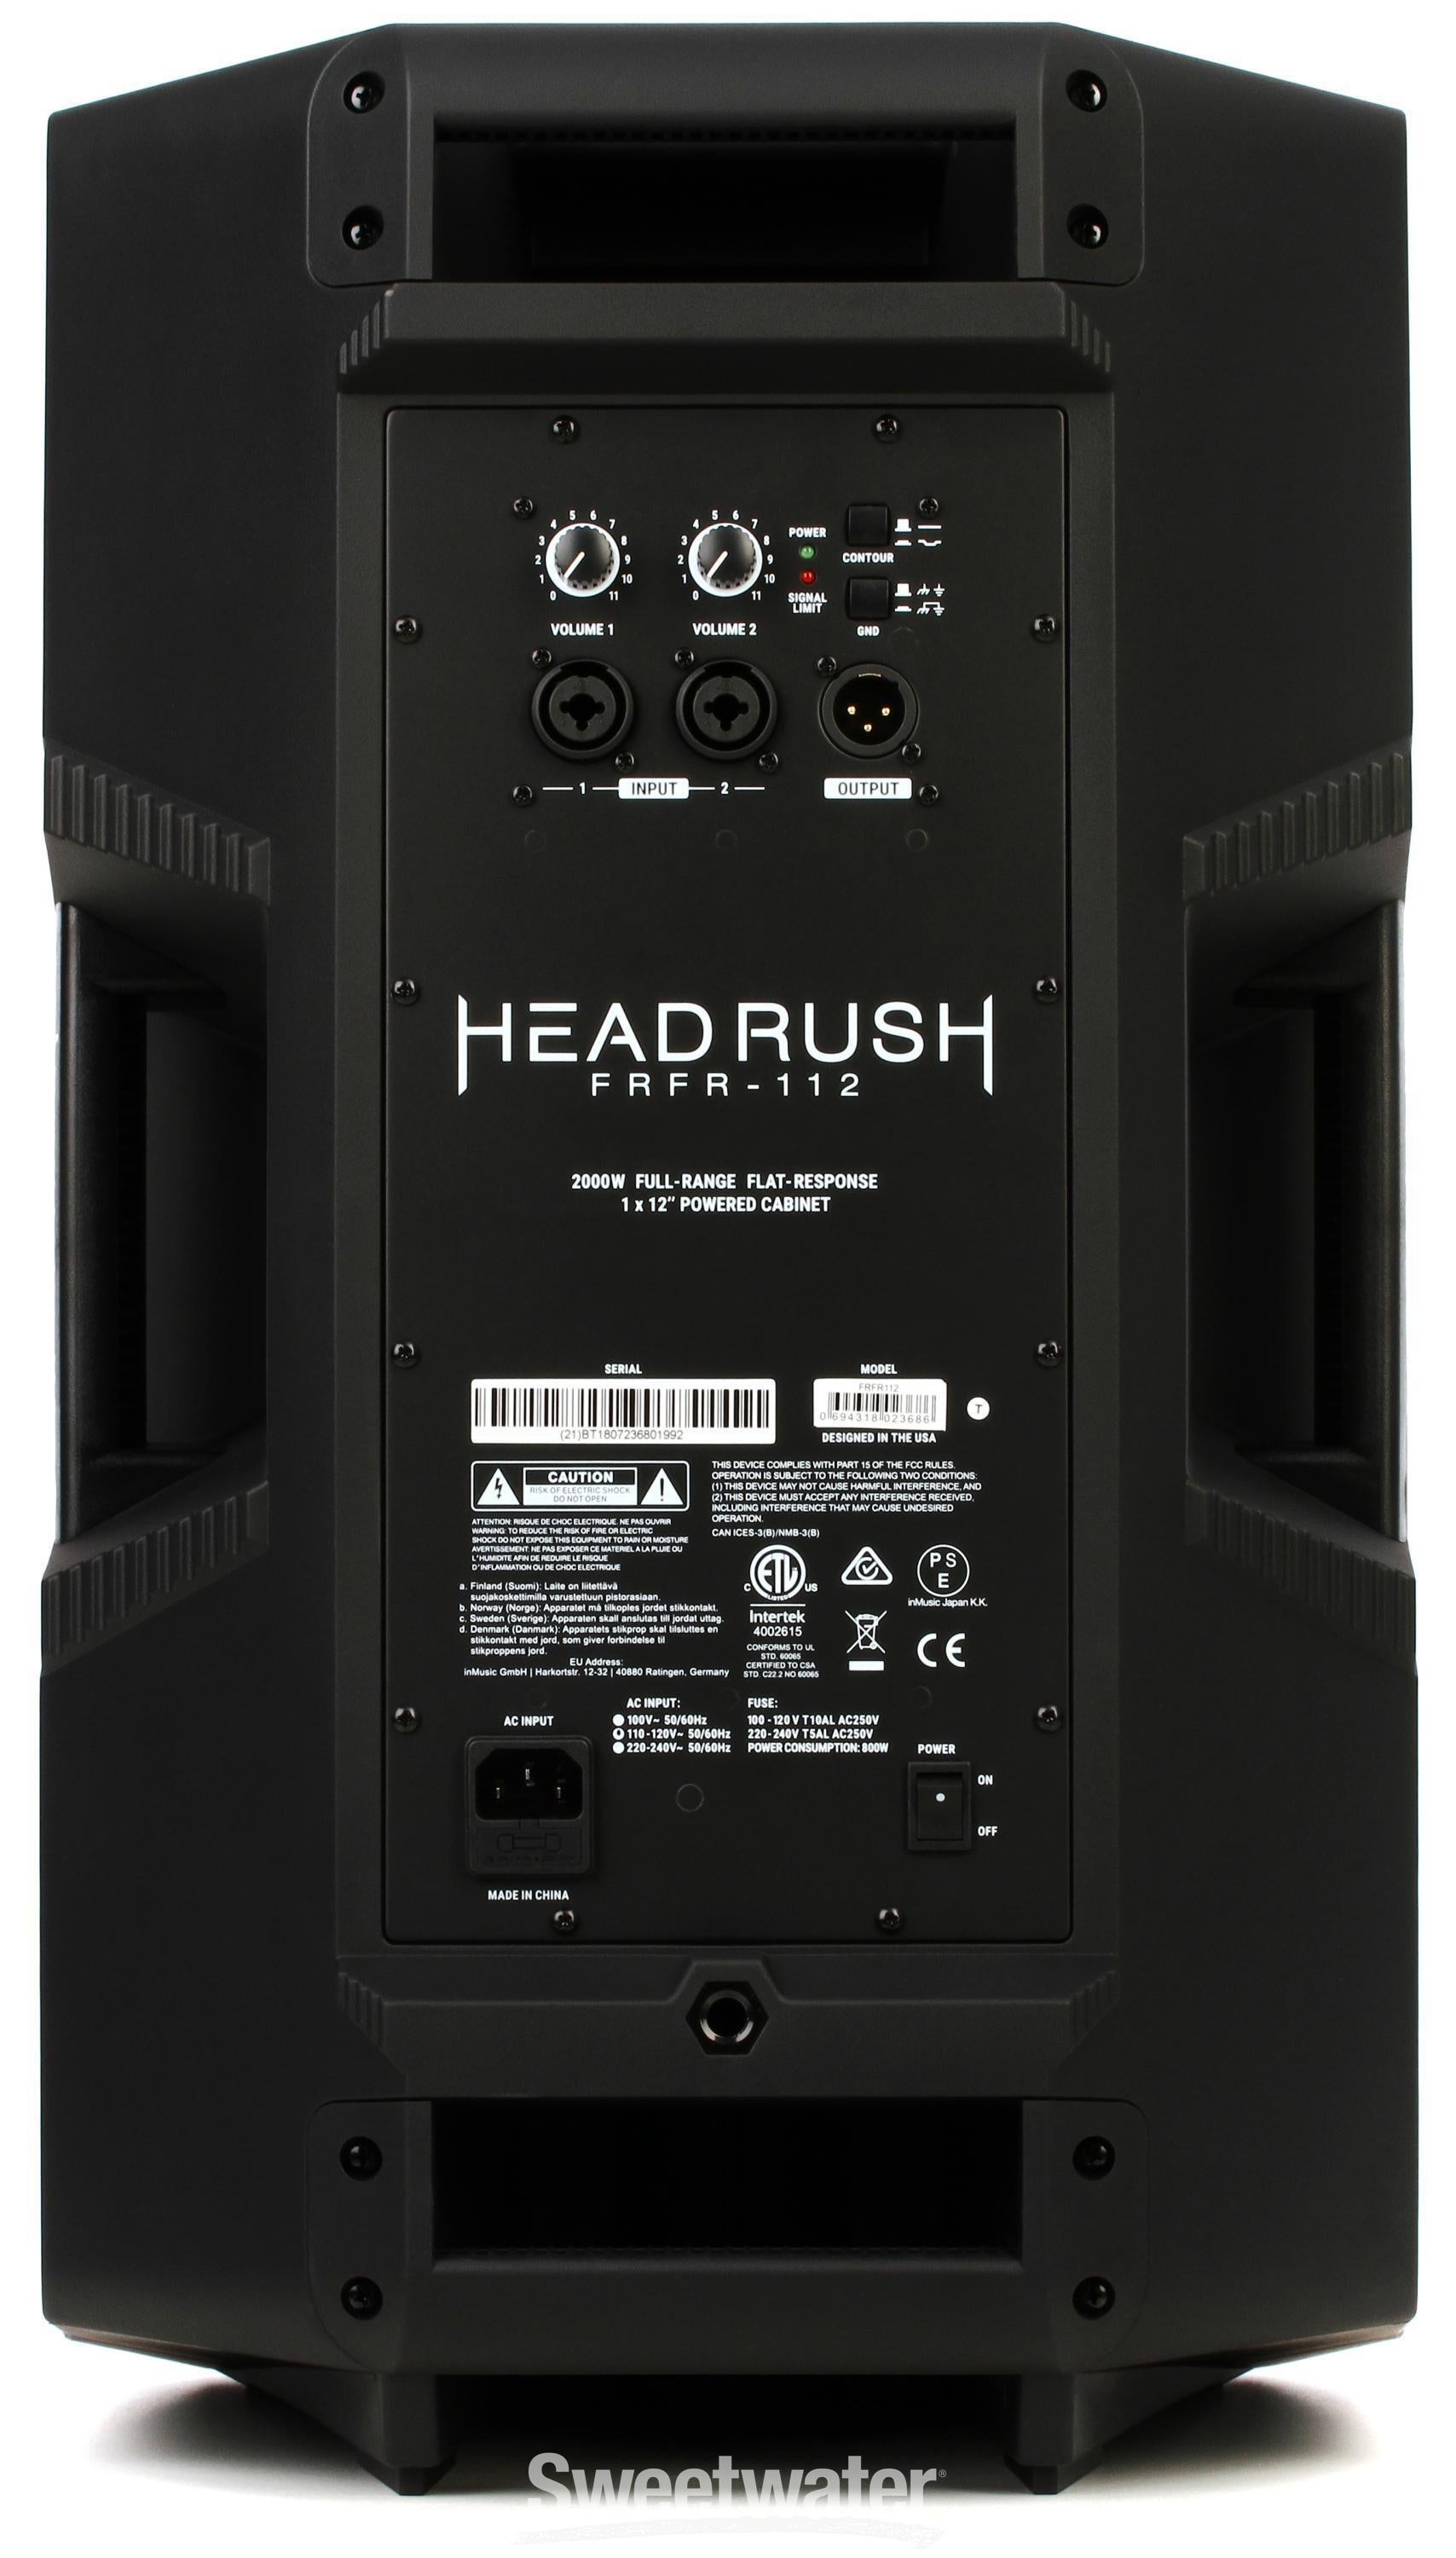 Headrush FRFR-112 2000-watt 1x12